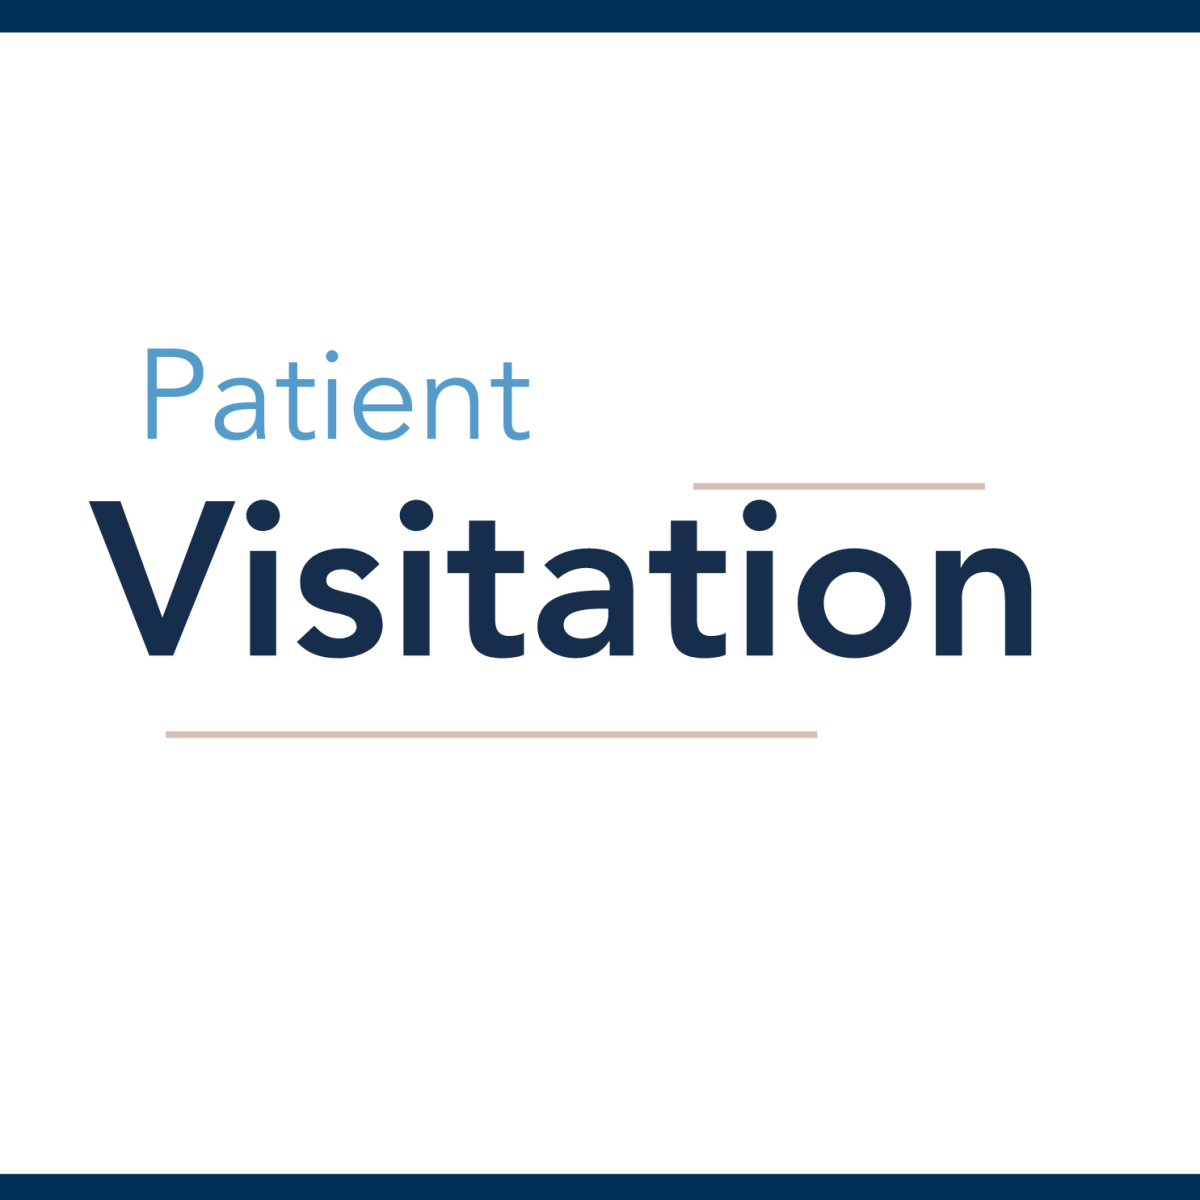 Patient Visitation